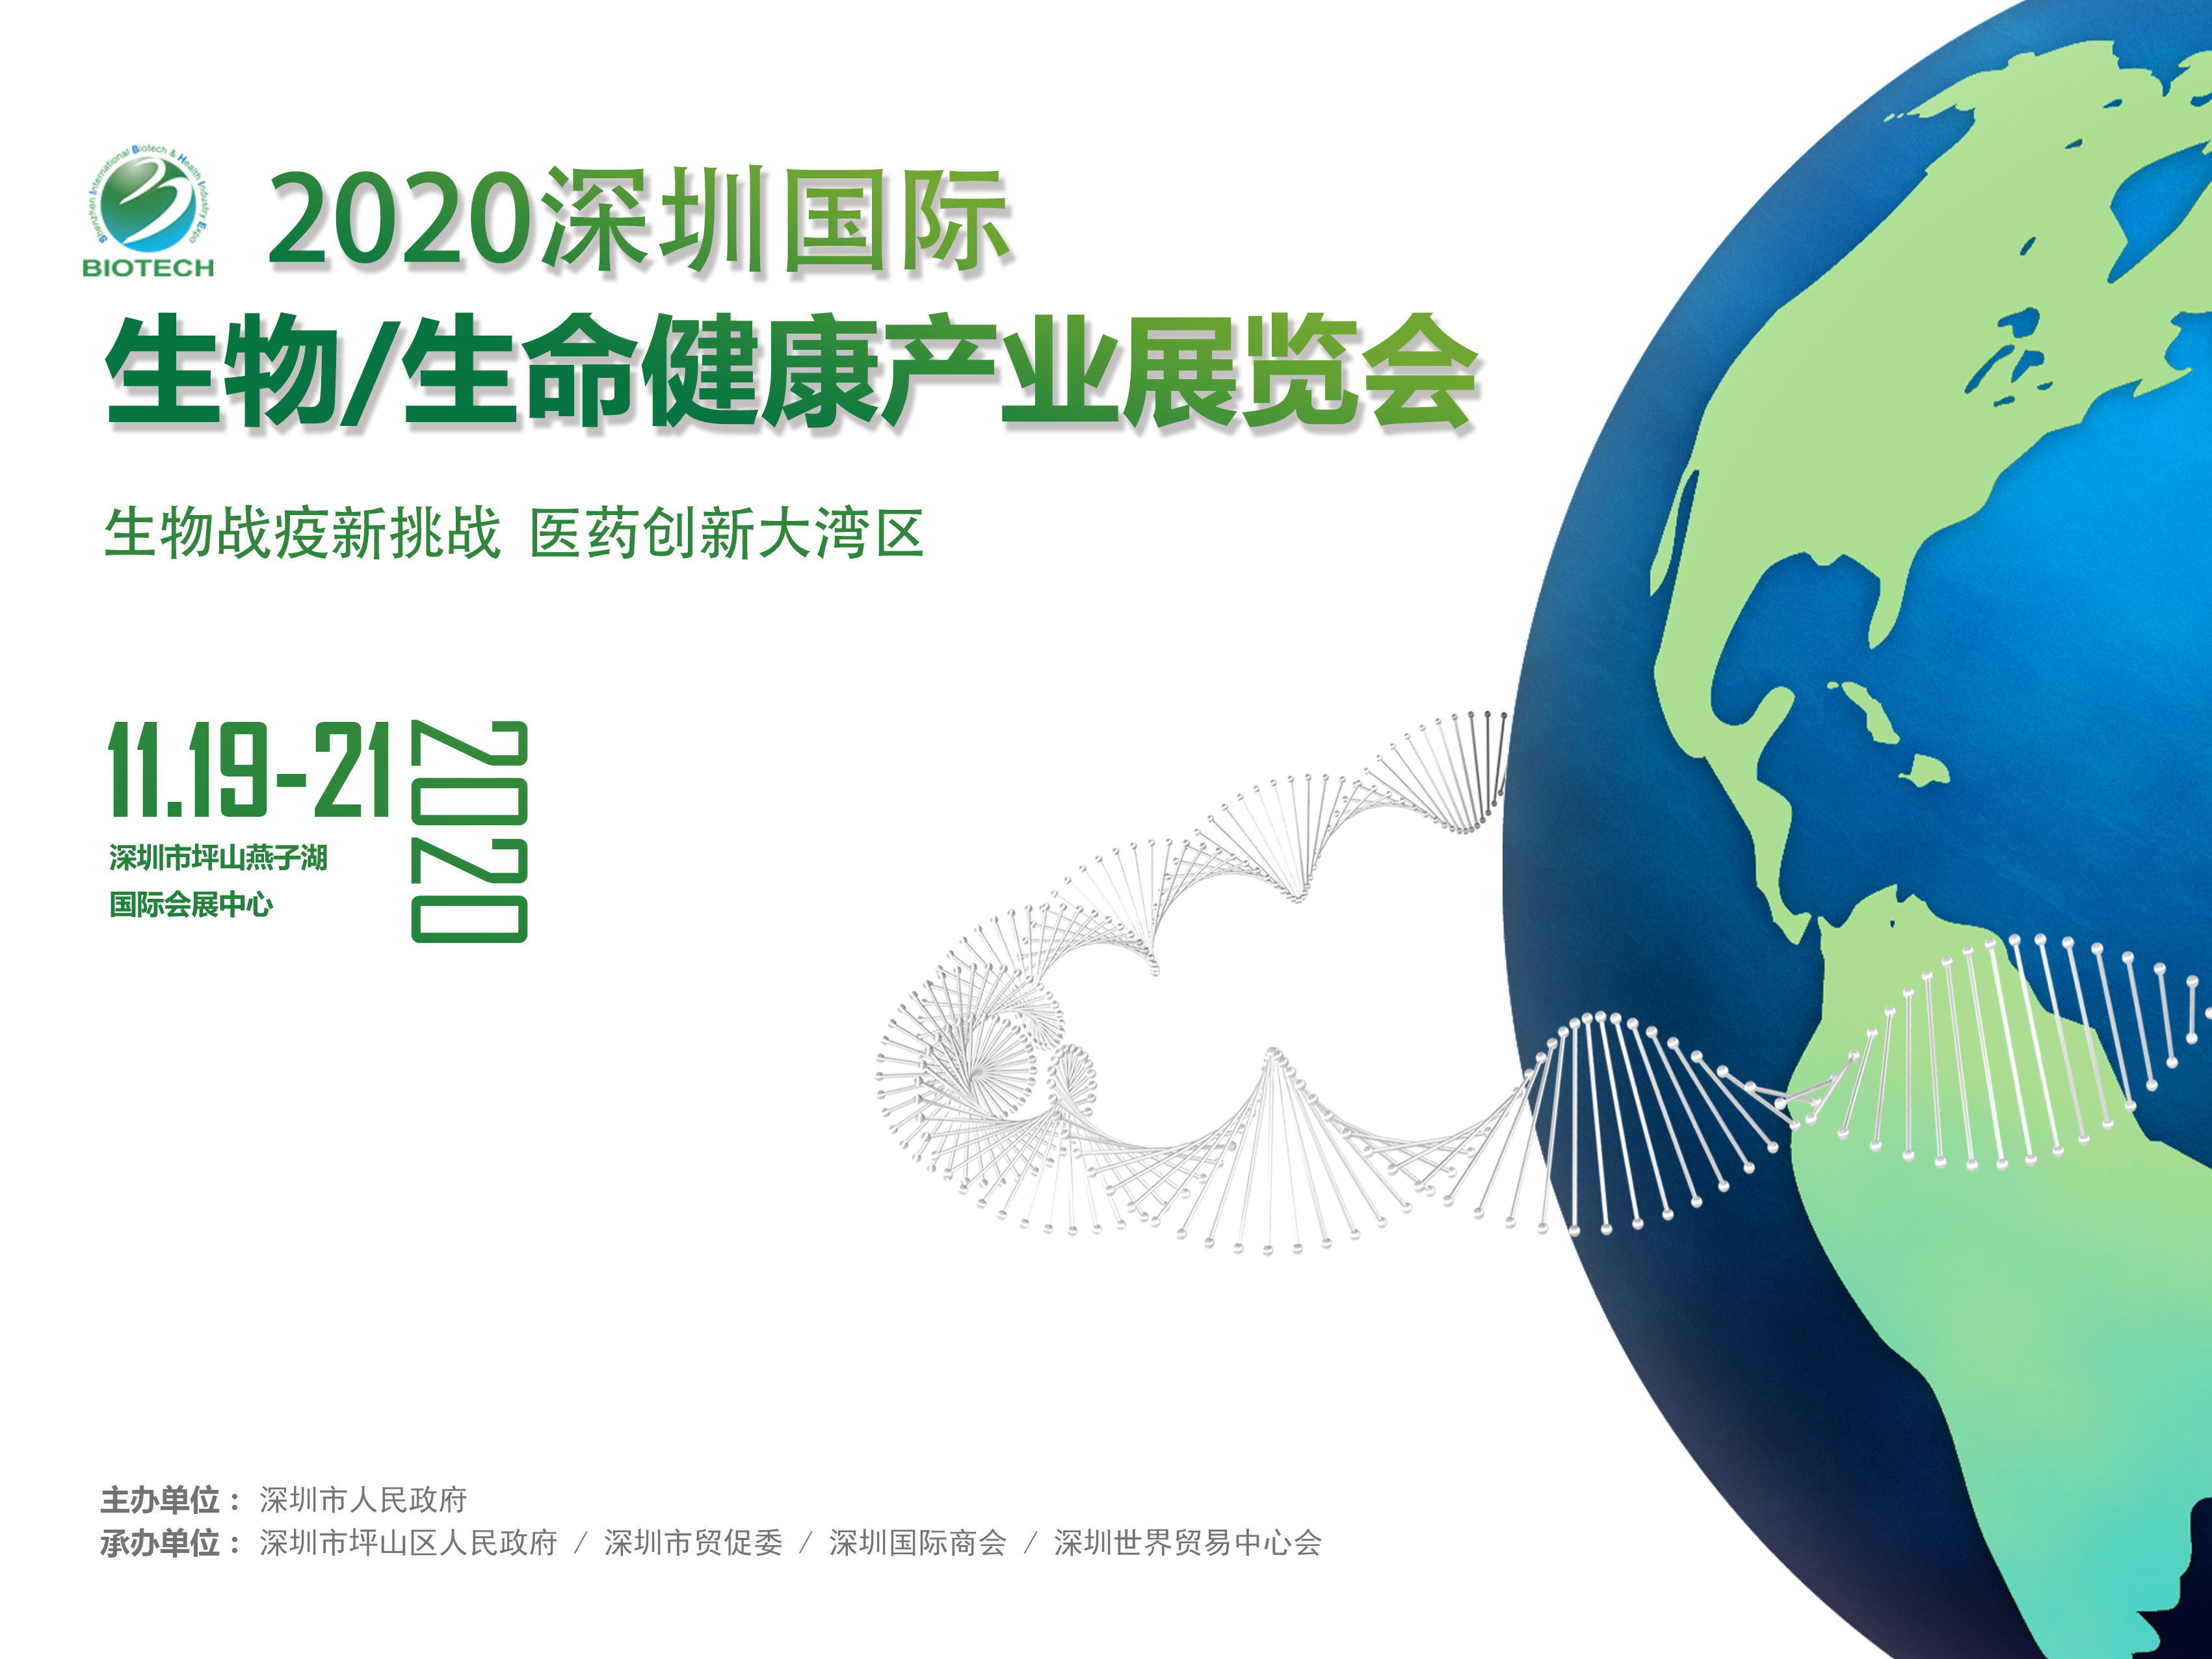 2020深圳国际生物/生命健康产业展览会于11月19日-21日在深圳市坪山燕子湖国际会展中心举办！